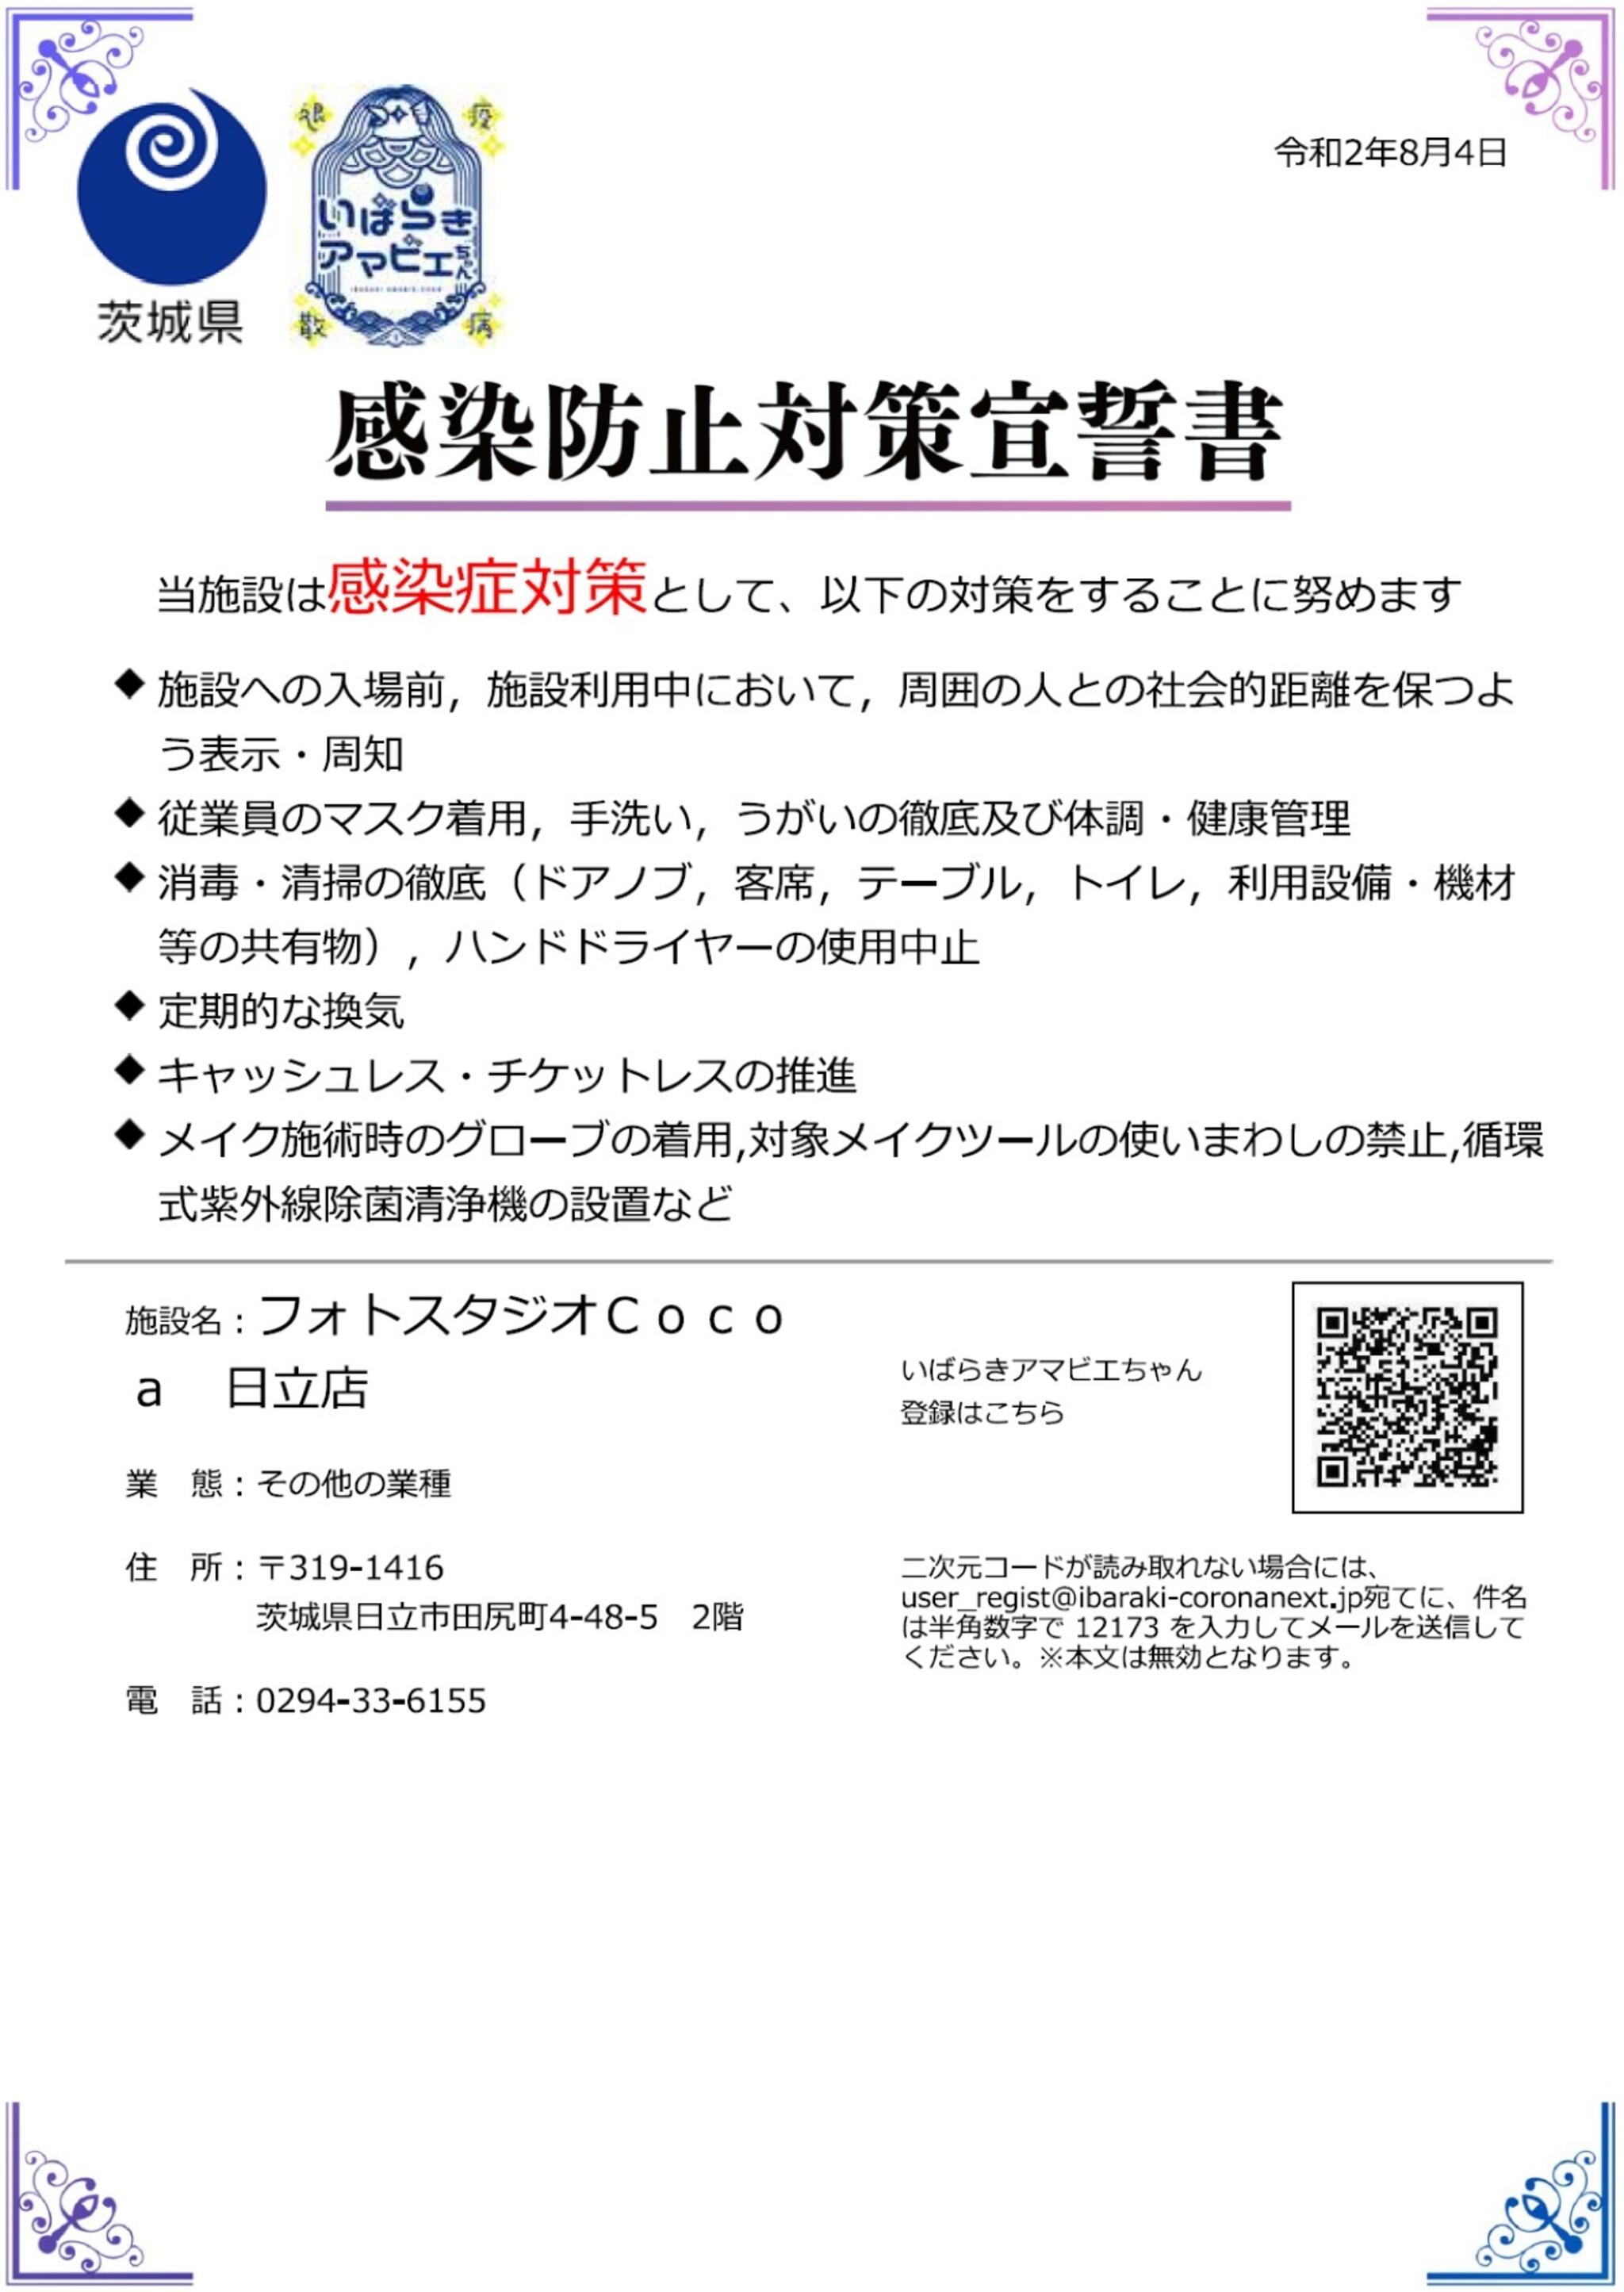 フォトスタジオCocoa日立店からのお知らせ(茨城県の感染拡大の防止を目的とした「いばらきアマビエちゃん」の導入に賛同し参加をしました。)に関する写真